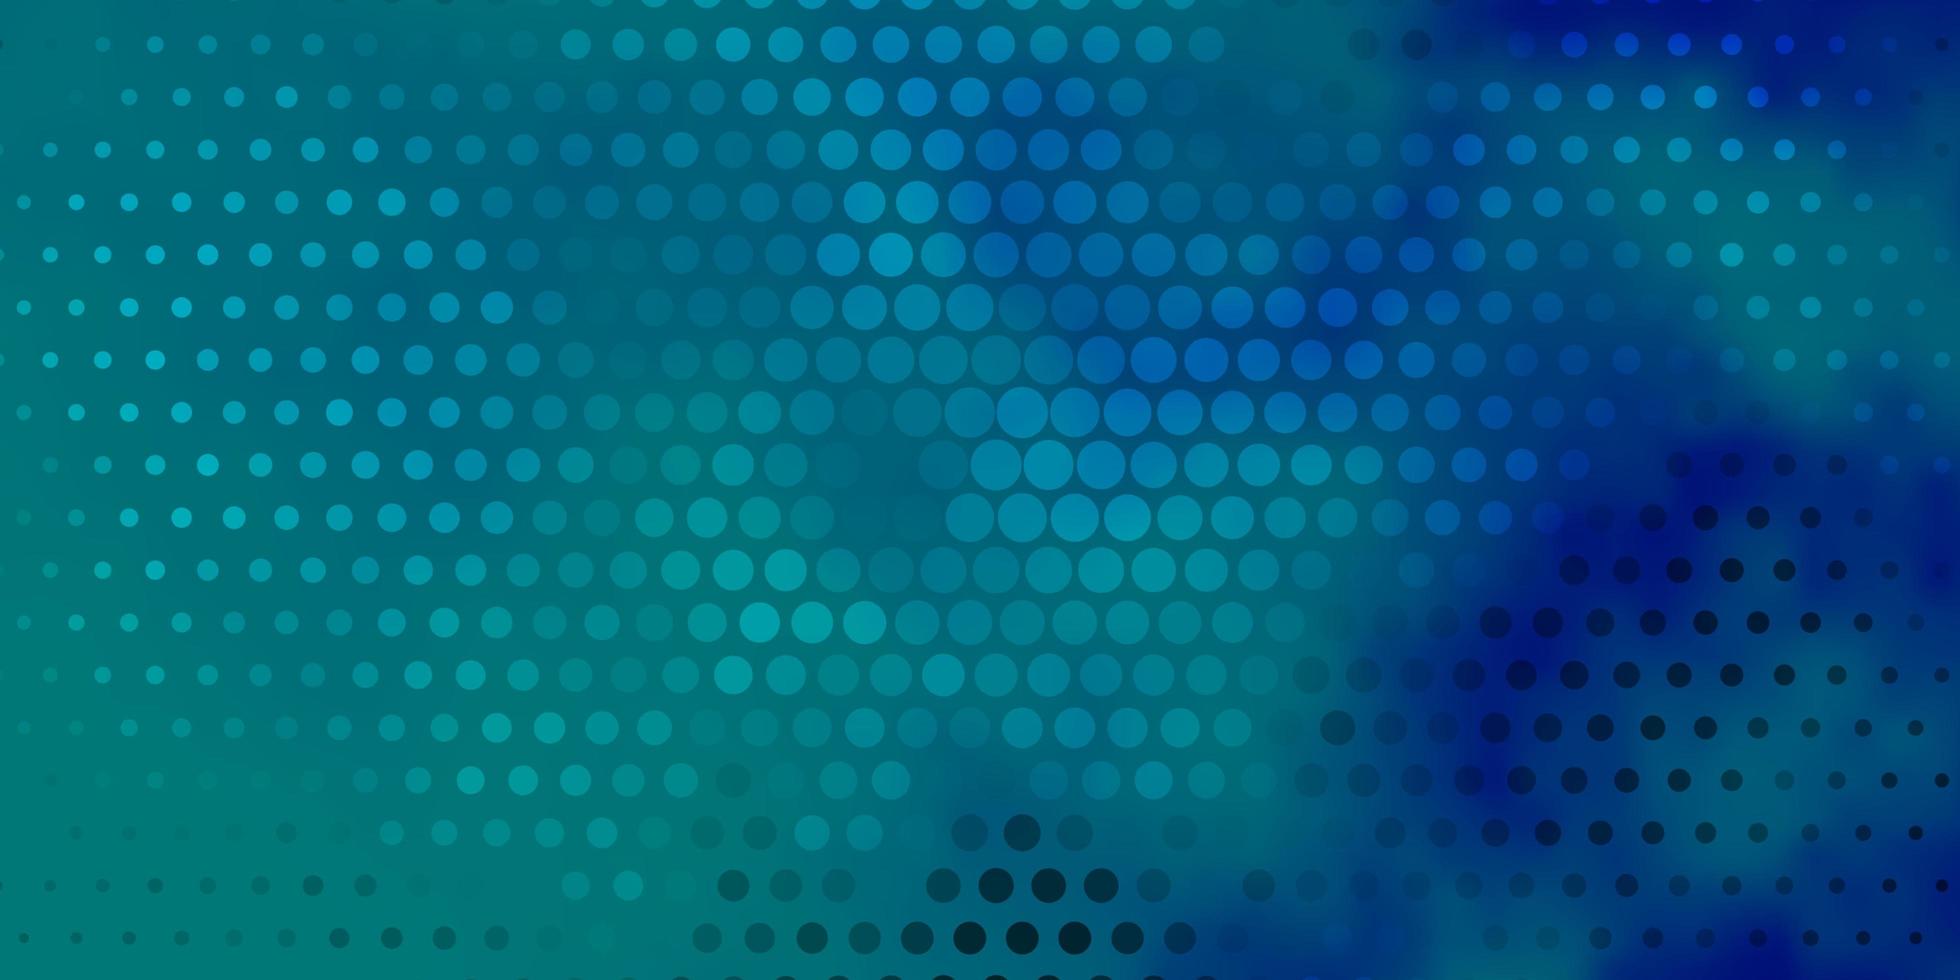 modelo de vetor azul claro com círculos de design decorativo abstrato em estilo gradiente com padrão de bolhas para folhetos de livretos